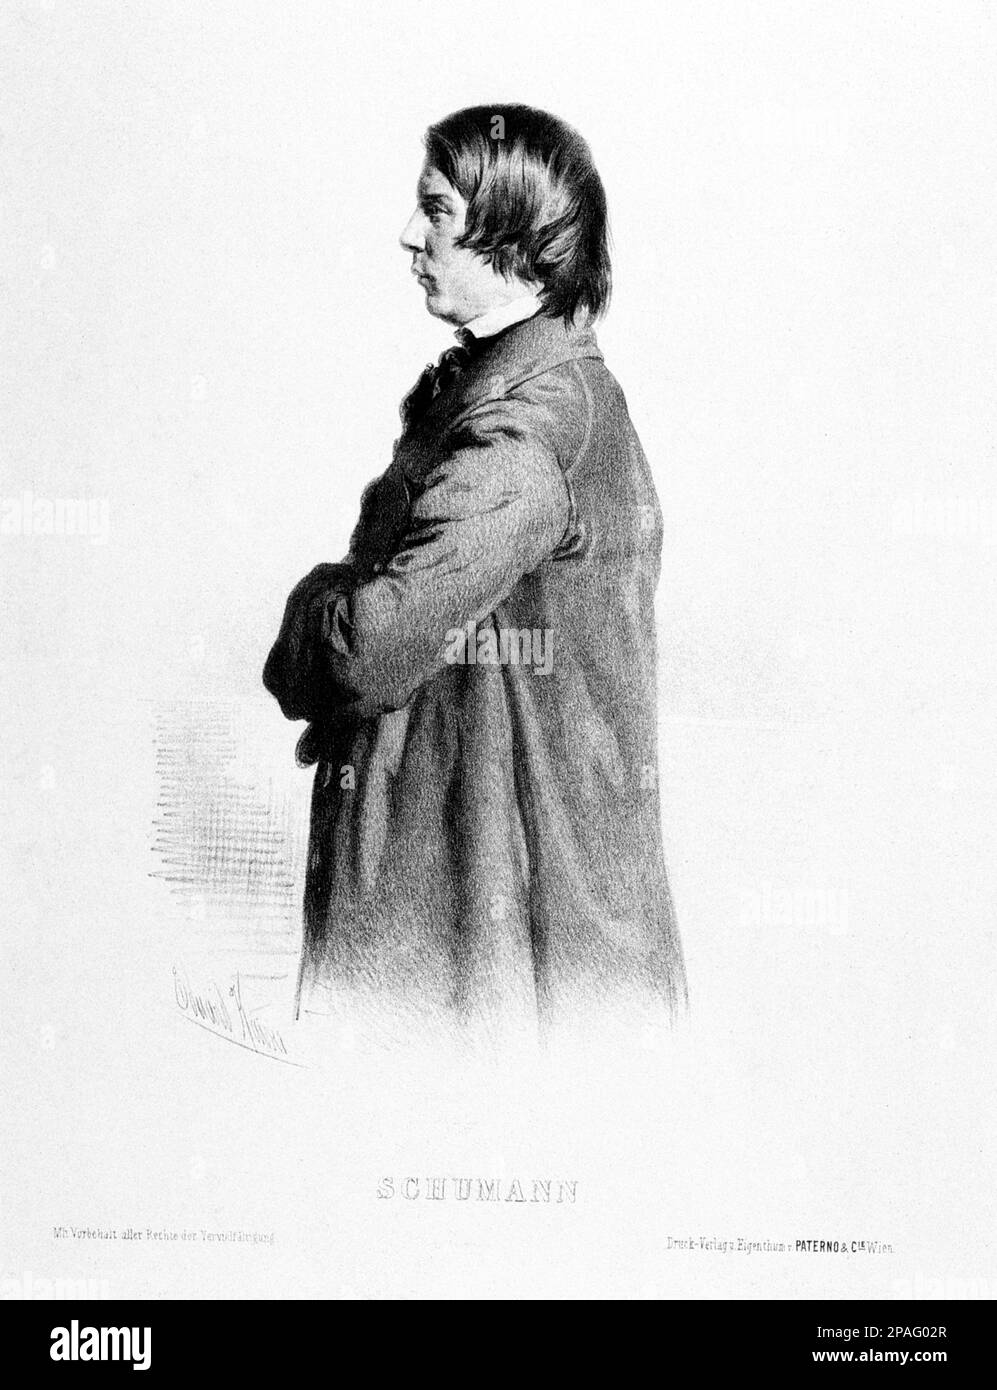 Le célèbre compositeur allemand ROBERT SCHUMANN ( 1810 - 1856 ) , ami de Johannes Brahms . Portrait gravé par E. Kaiser , imprimé à Vienne par Paterno' et C.ie. - MUSICA CLASSICA - CLASSIQUE - COMPOSIORE - MUSICISTA - portrait - ritrato - profilo - profil - incisione --- ARCHIVIO GBB Banque D'Images